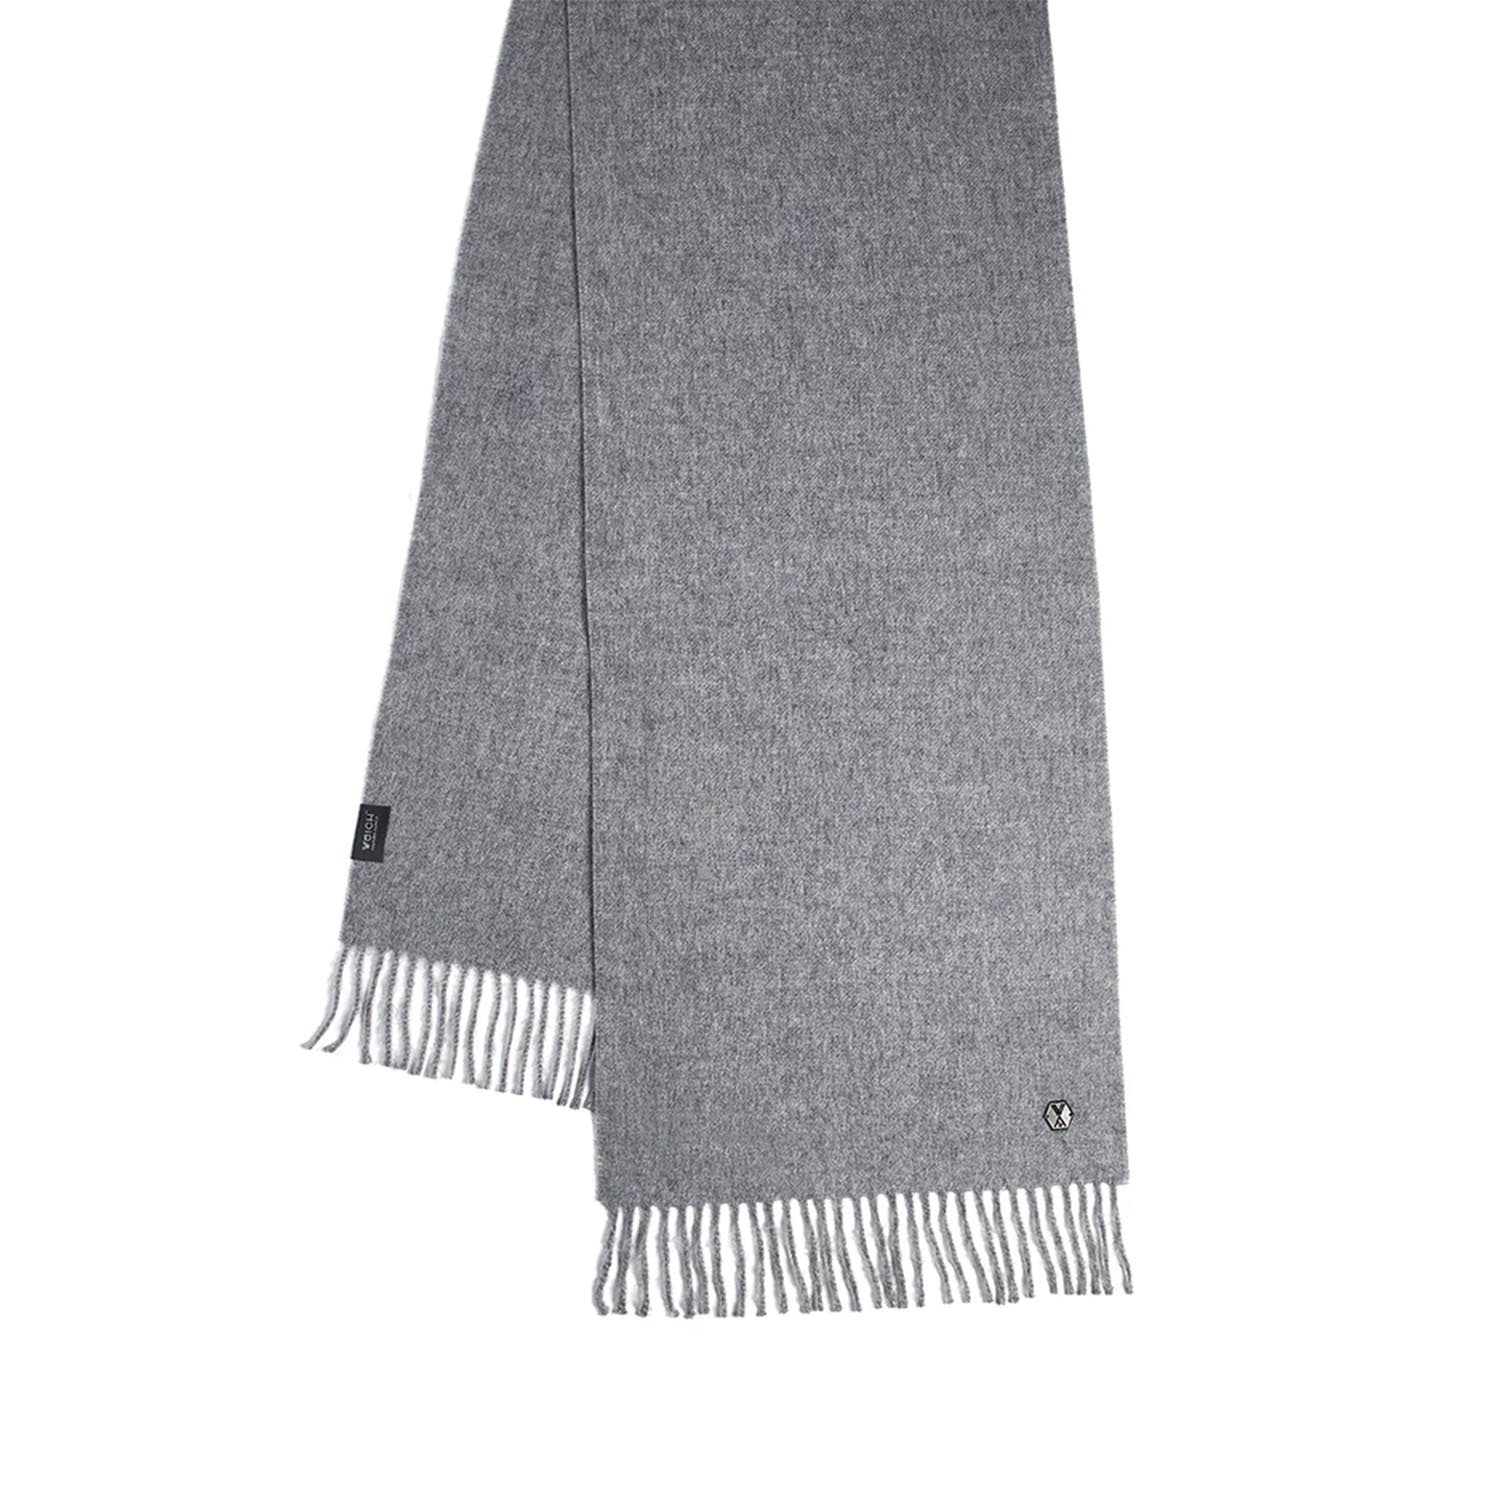 Schal Alma, Farbe grey von Weich Couture Alpaca